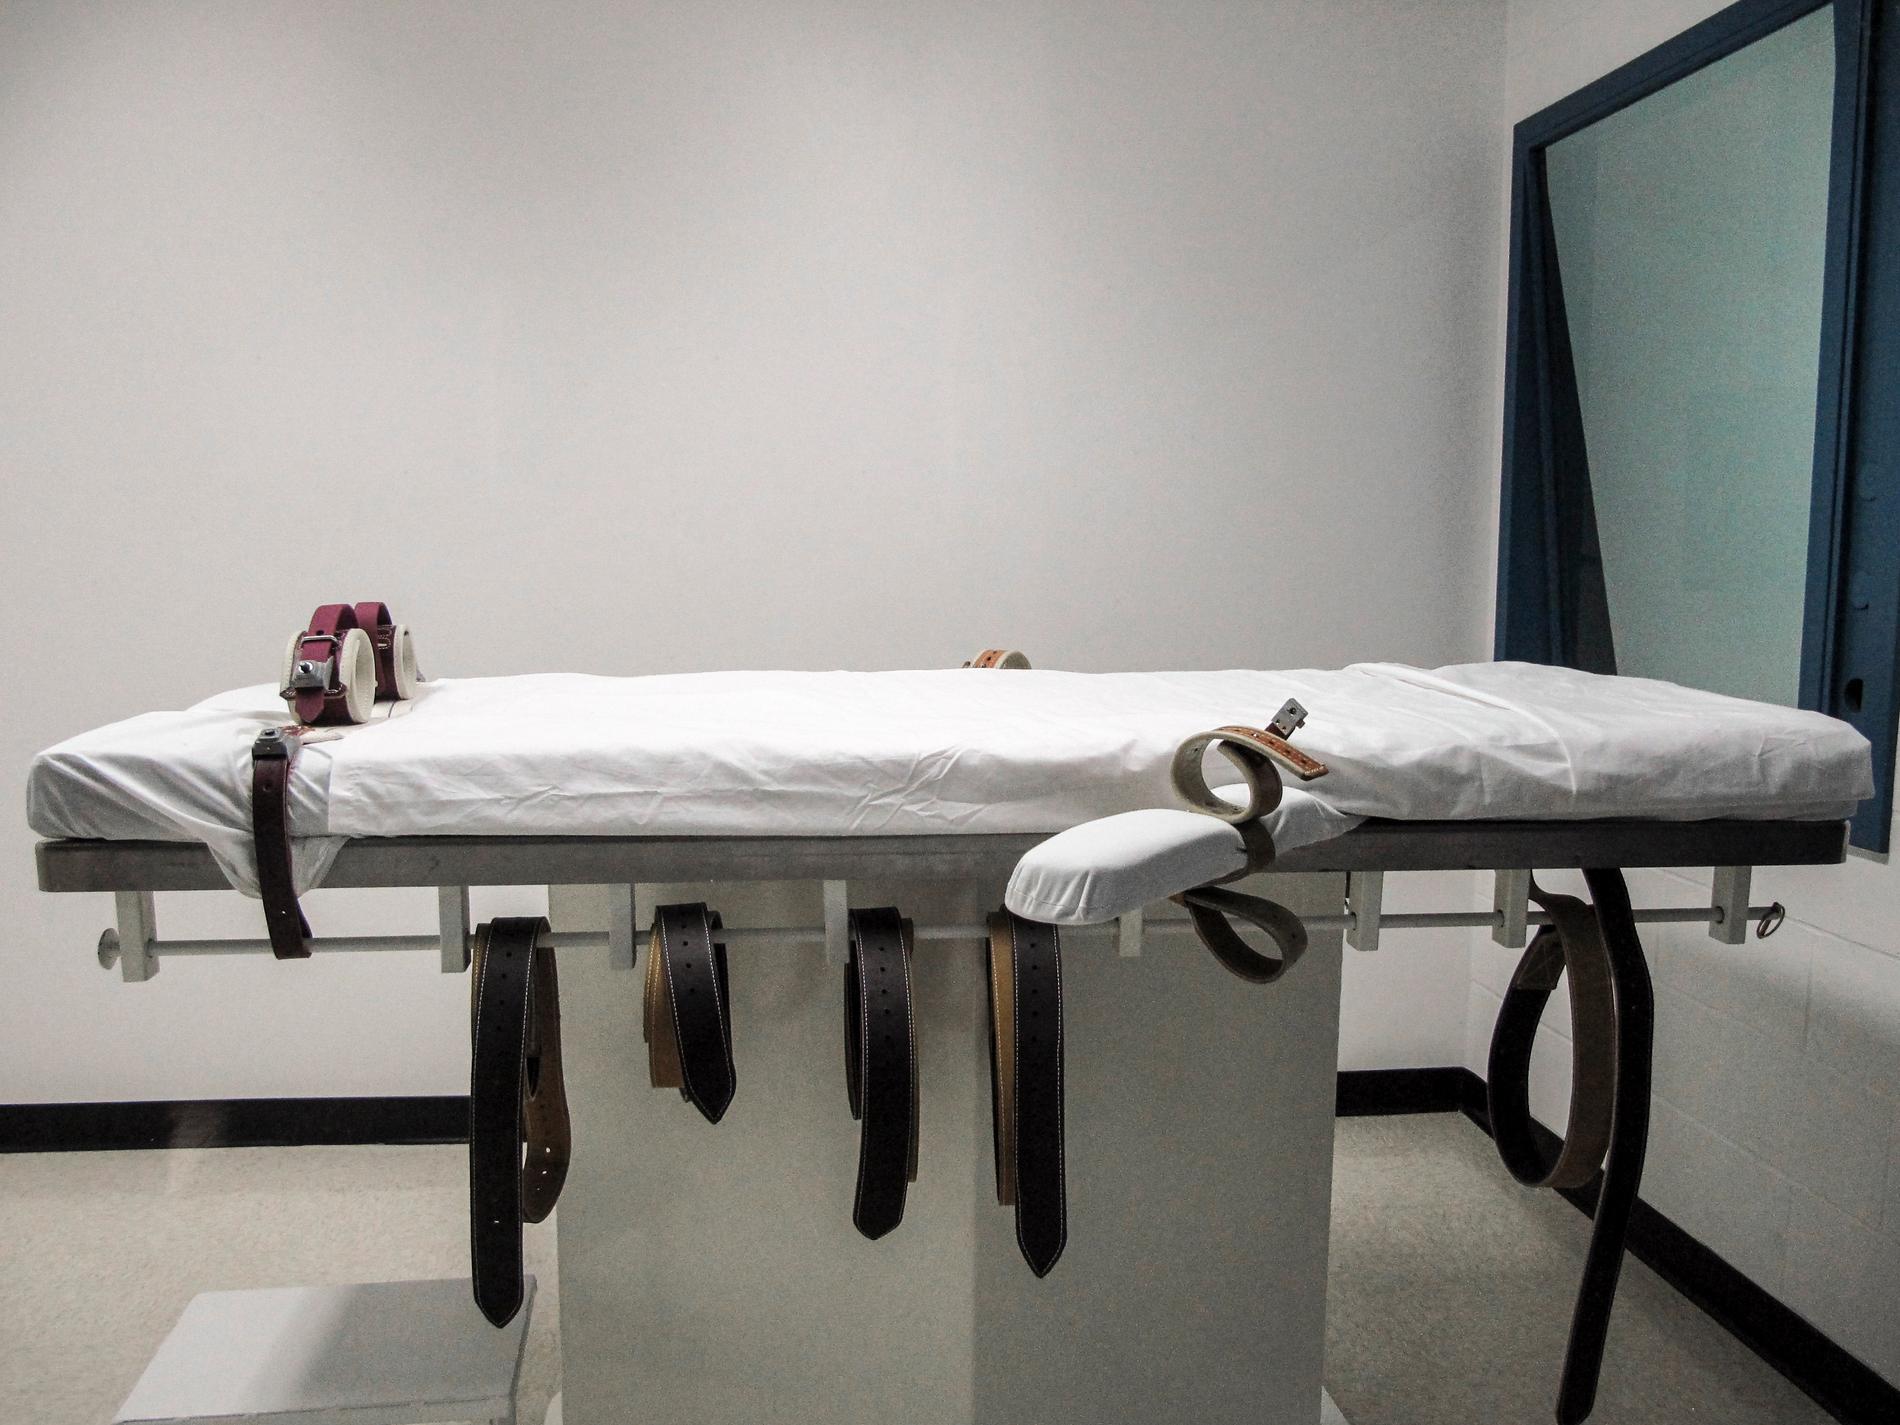 En avrättningskammare i ett fängelse i Nebraska i USA.